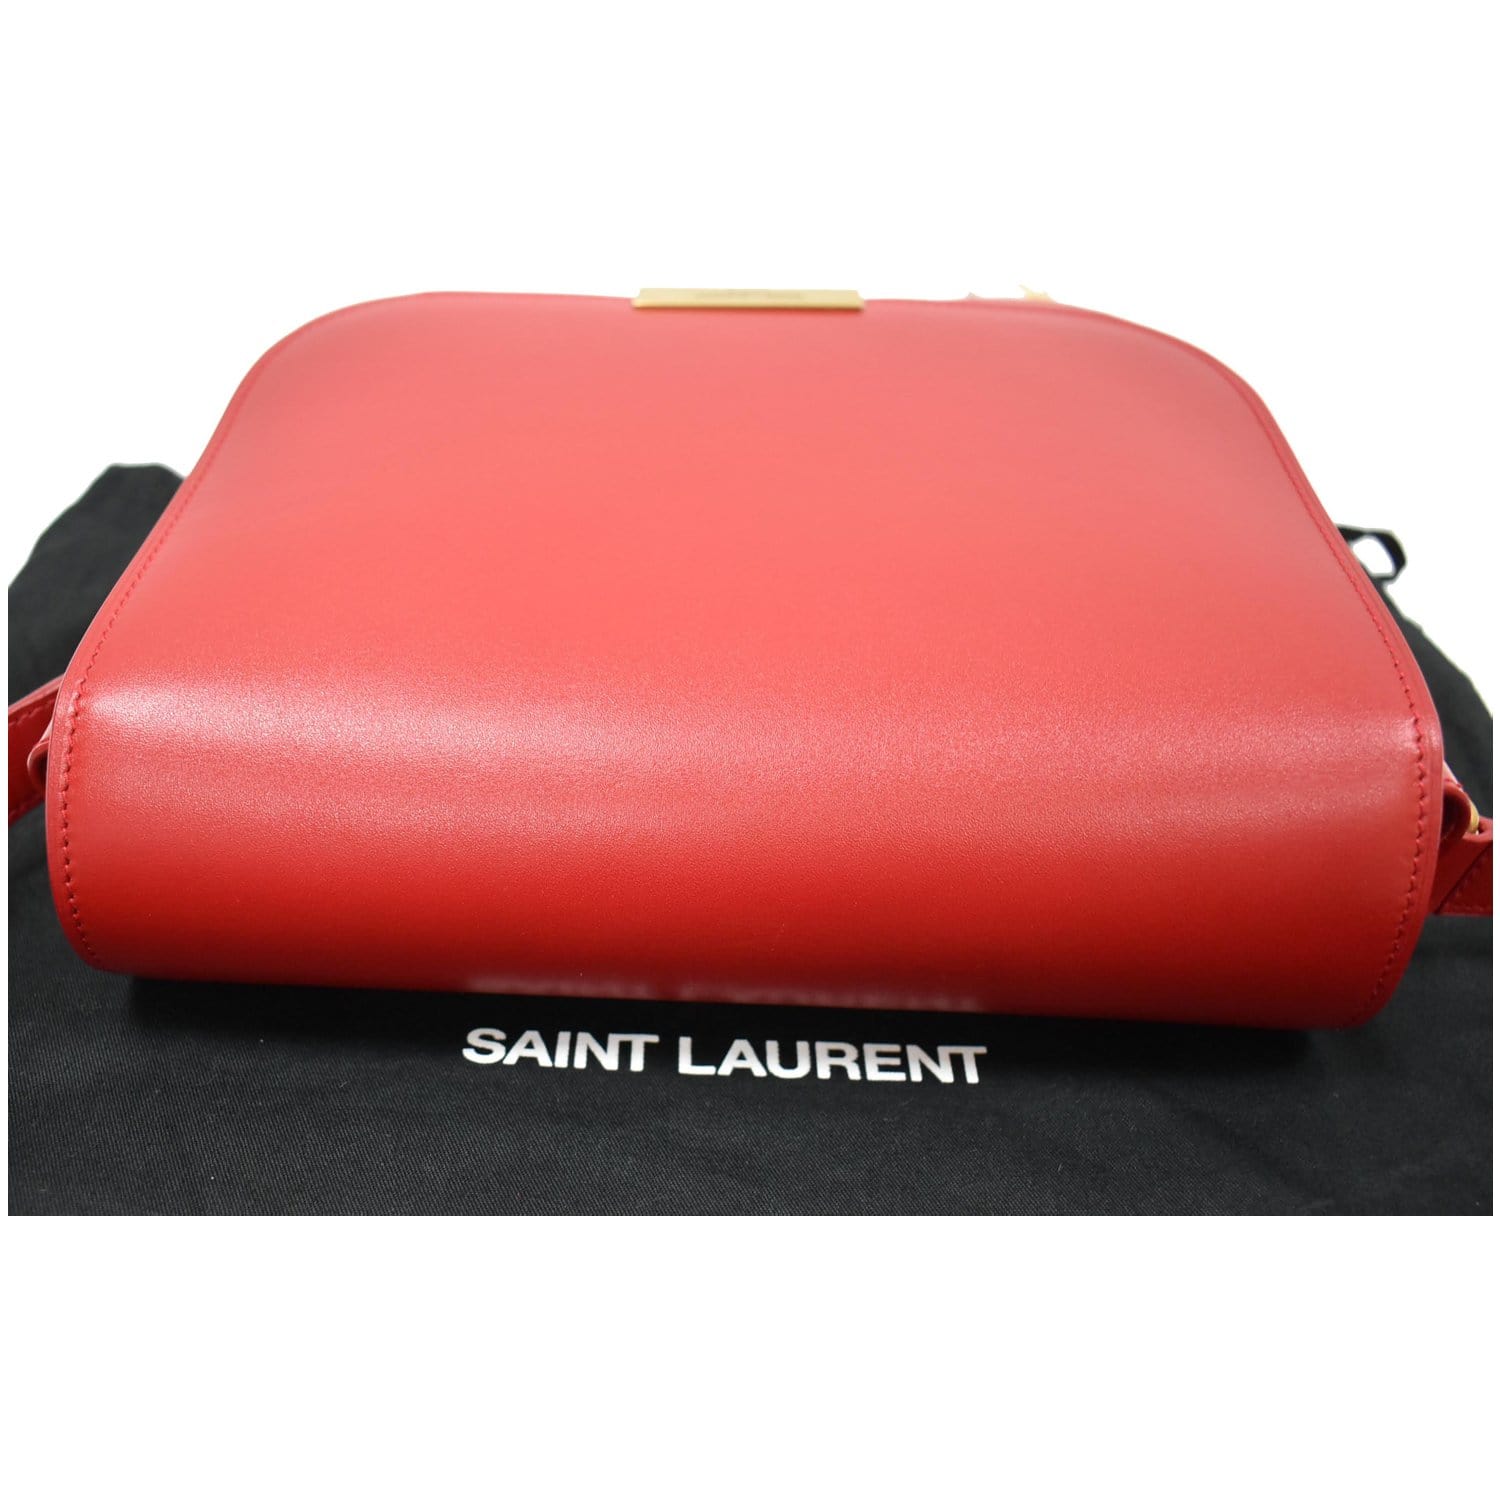 Saint Laurent 504924 0hg0n 6805 2way Bag Handbag Shoulder Bag Leather Women Red